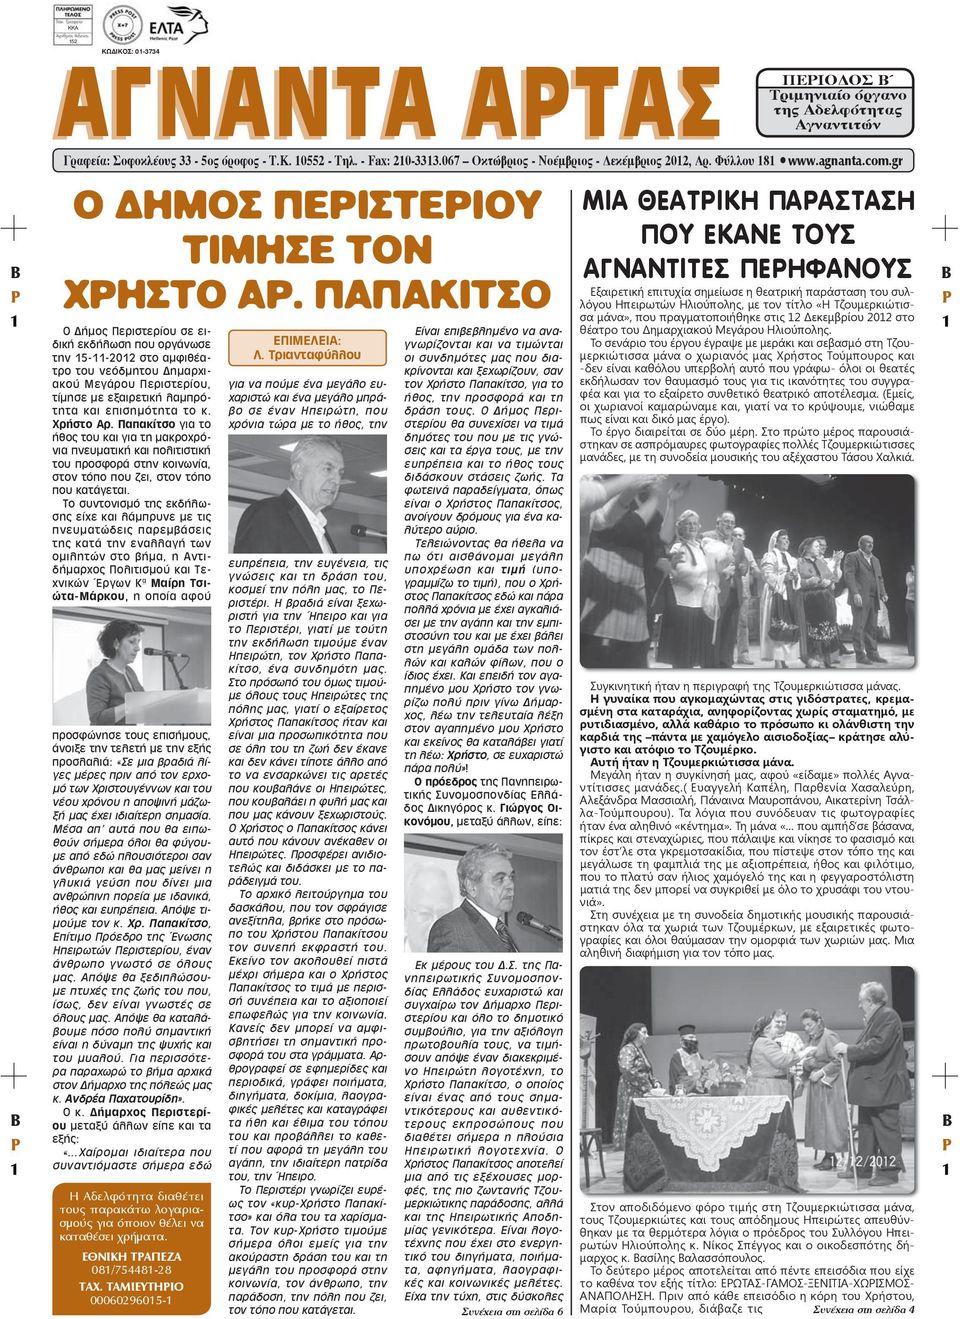 ΠΑΠΑΚΙΤΣΟ Ο Δήμος Περιστερίου σε ειδική εκδήλωση που οργάνωσε την 15-11-2012 στο αμφιθέατρο του νεόδμητου Δημαρχιακού Μεγάρου Περιστερίου, τίμησε με εξαιρετική λαμπρότητα και επισημότητα το κ.